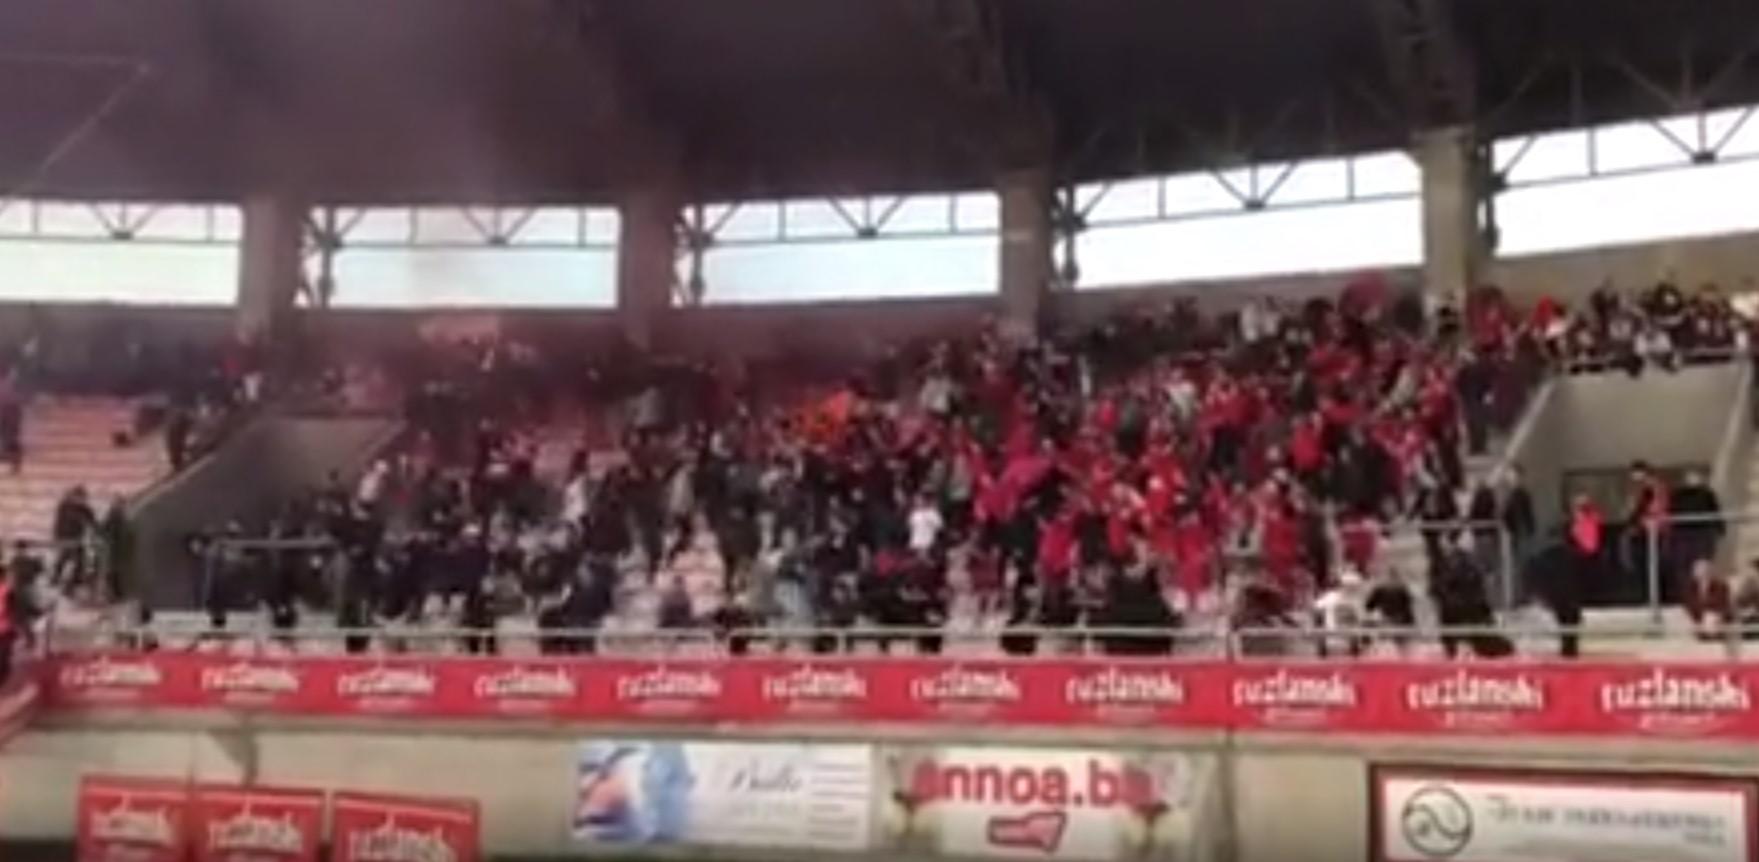 Pogledajte šta se događalo na tribini stadiona Tušanj: Zašto je reagirala policija